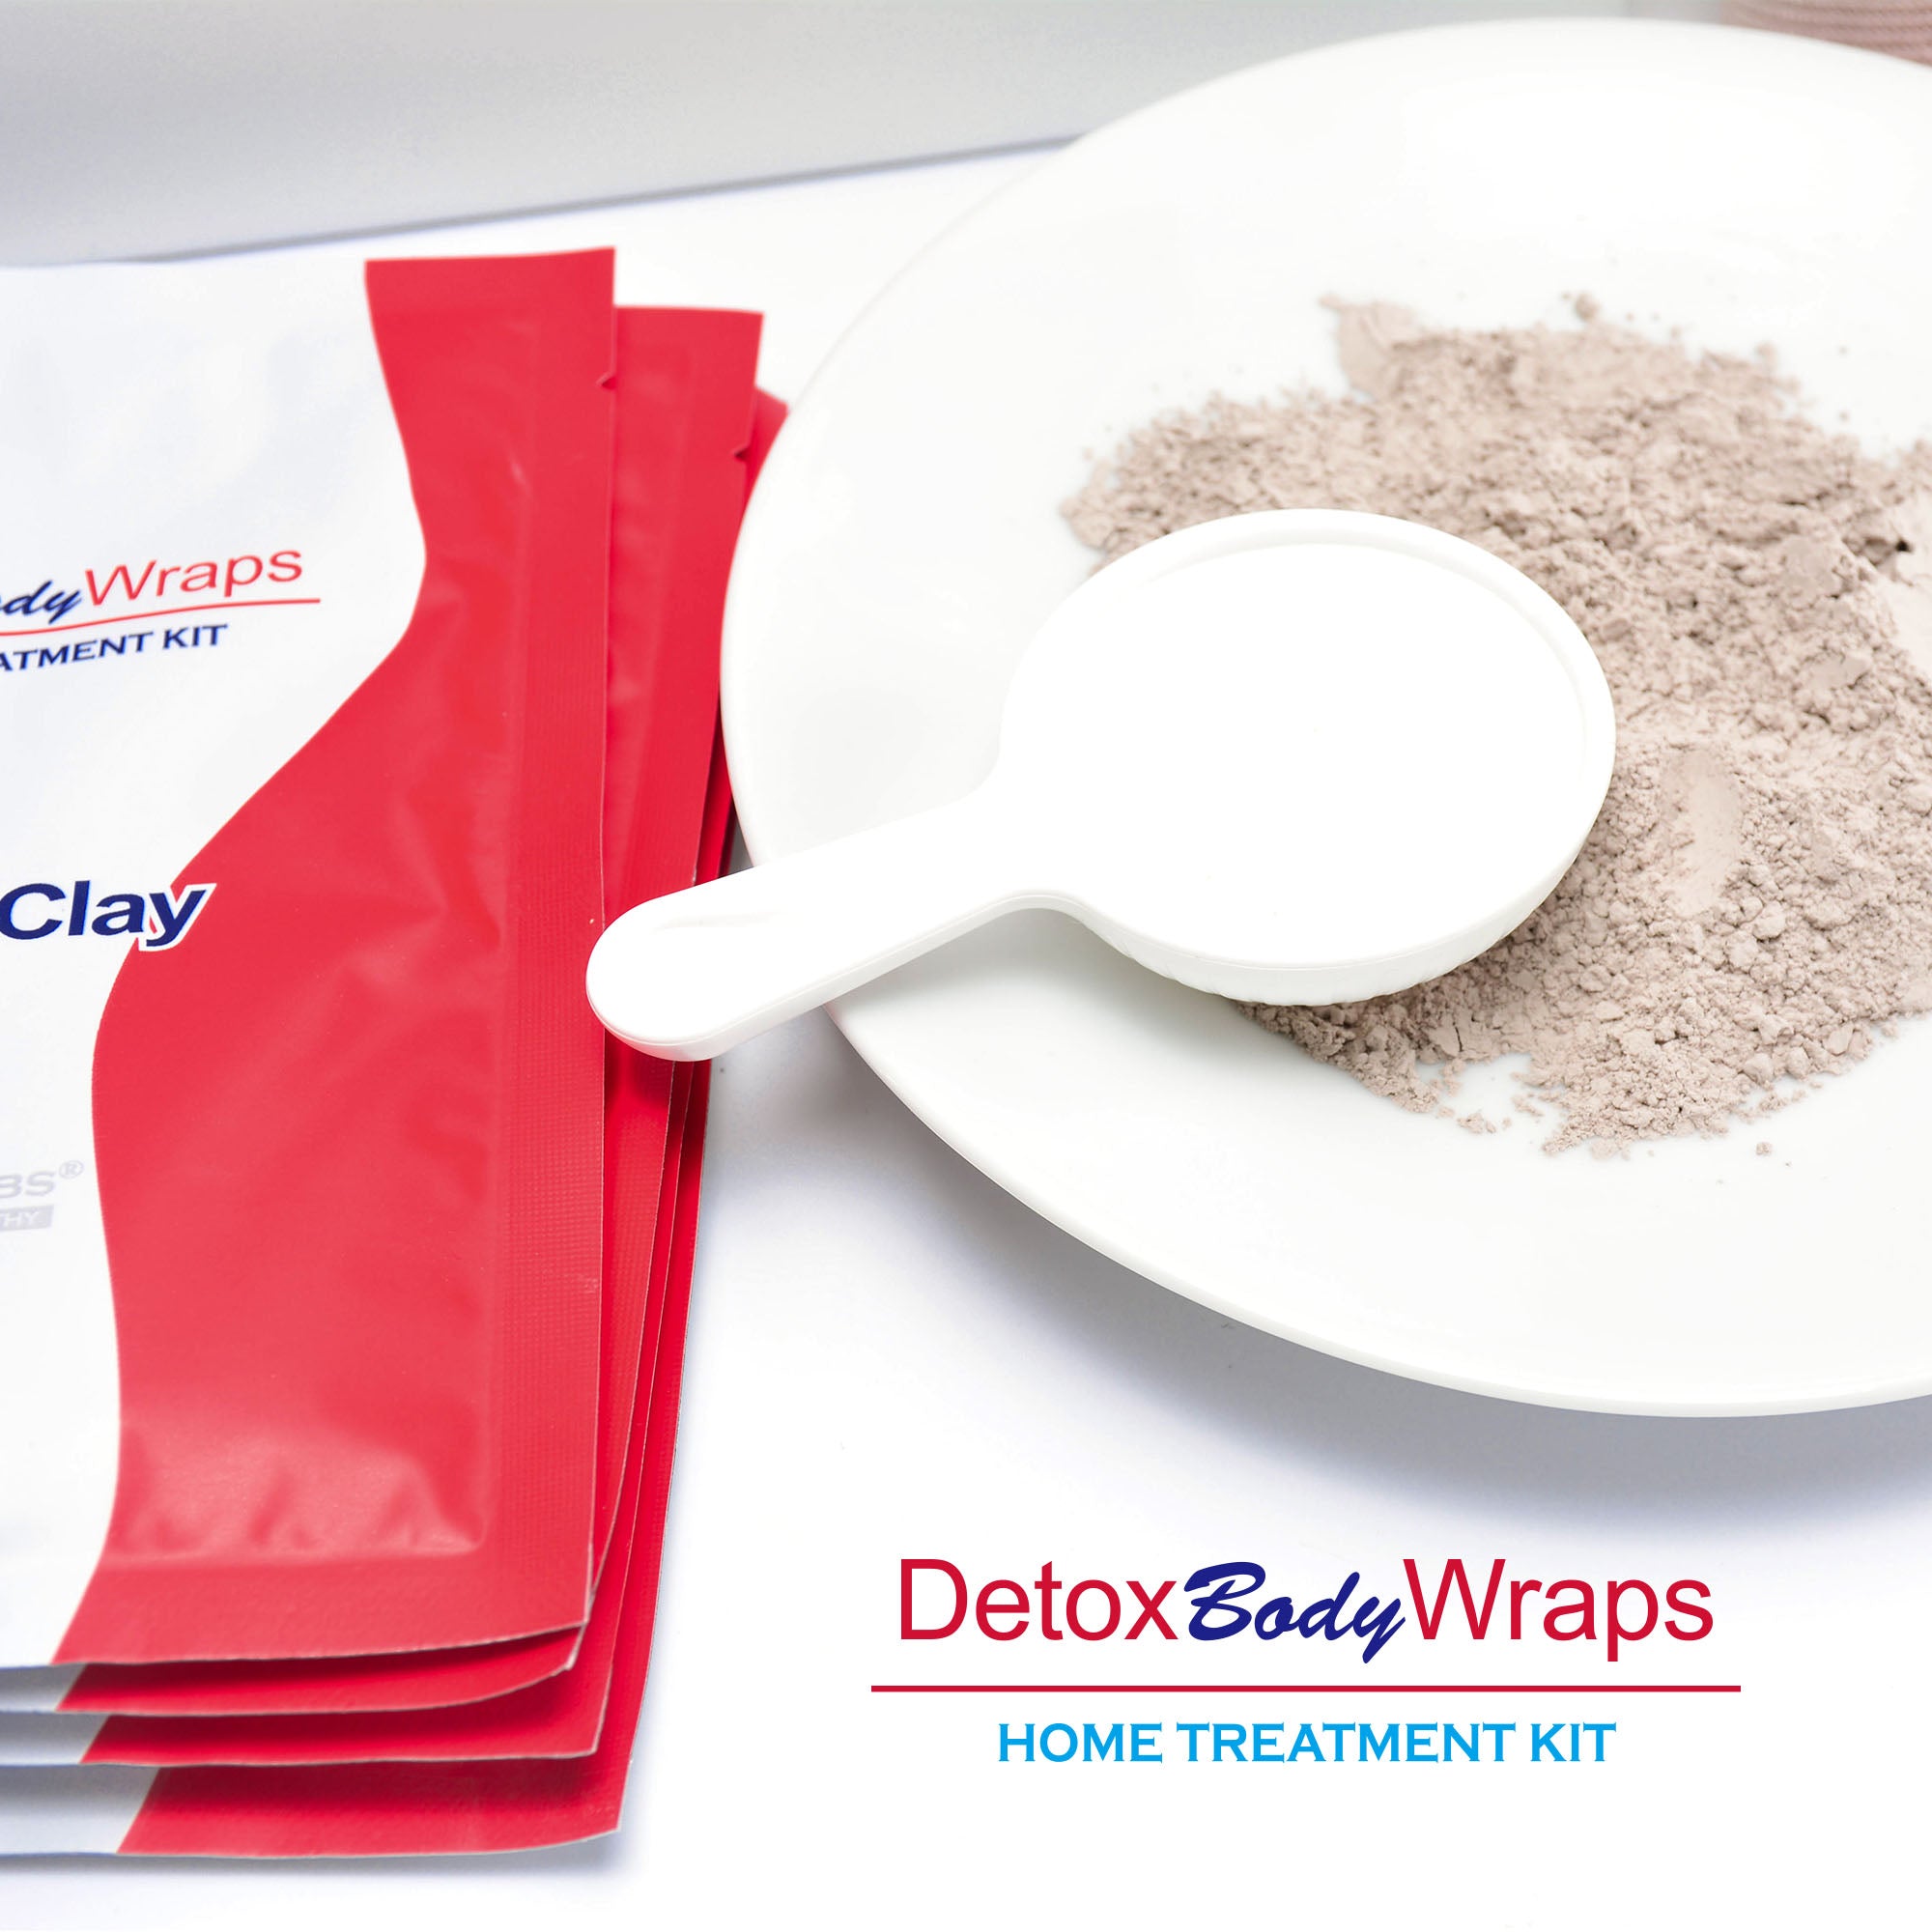 detox body wraps home treatment kit